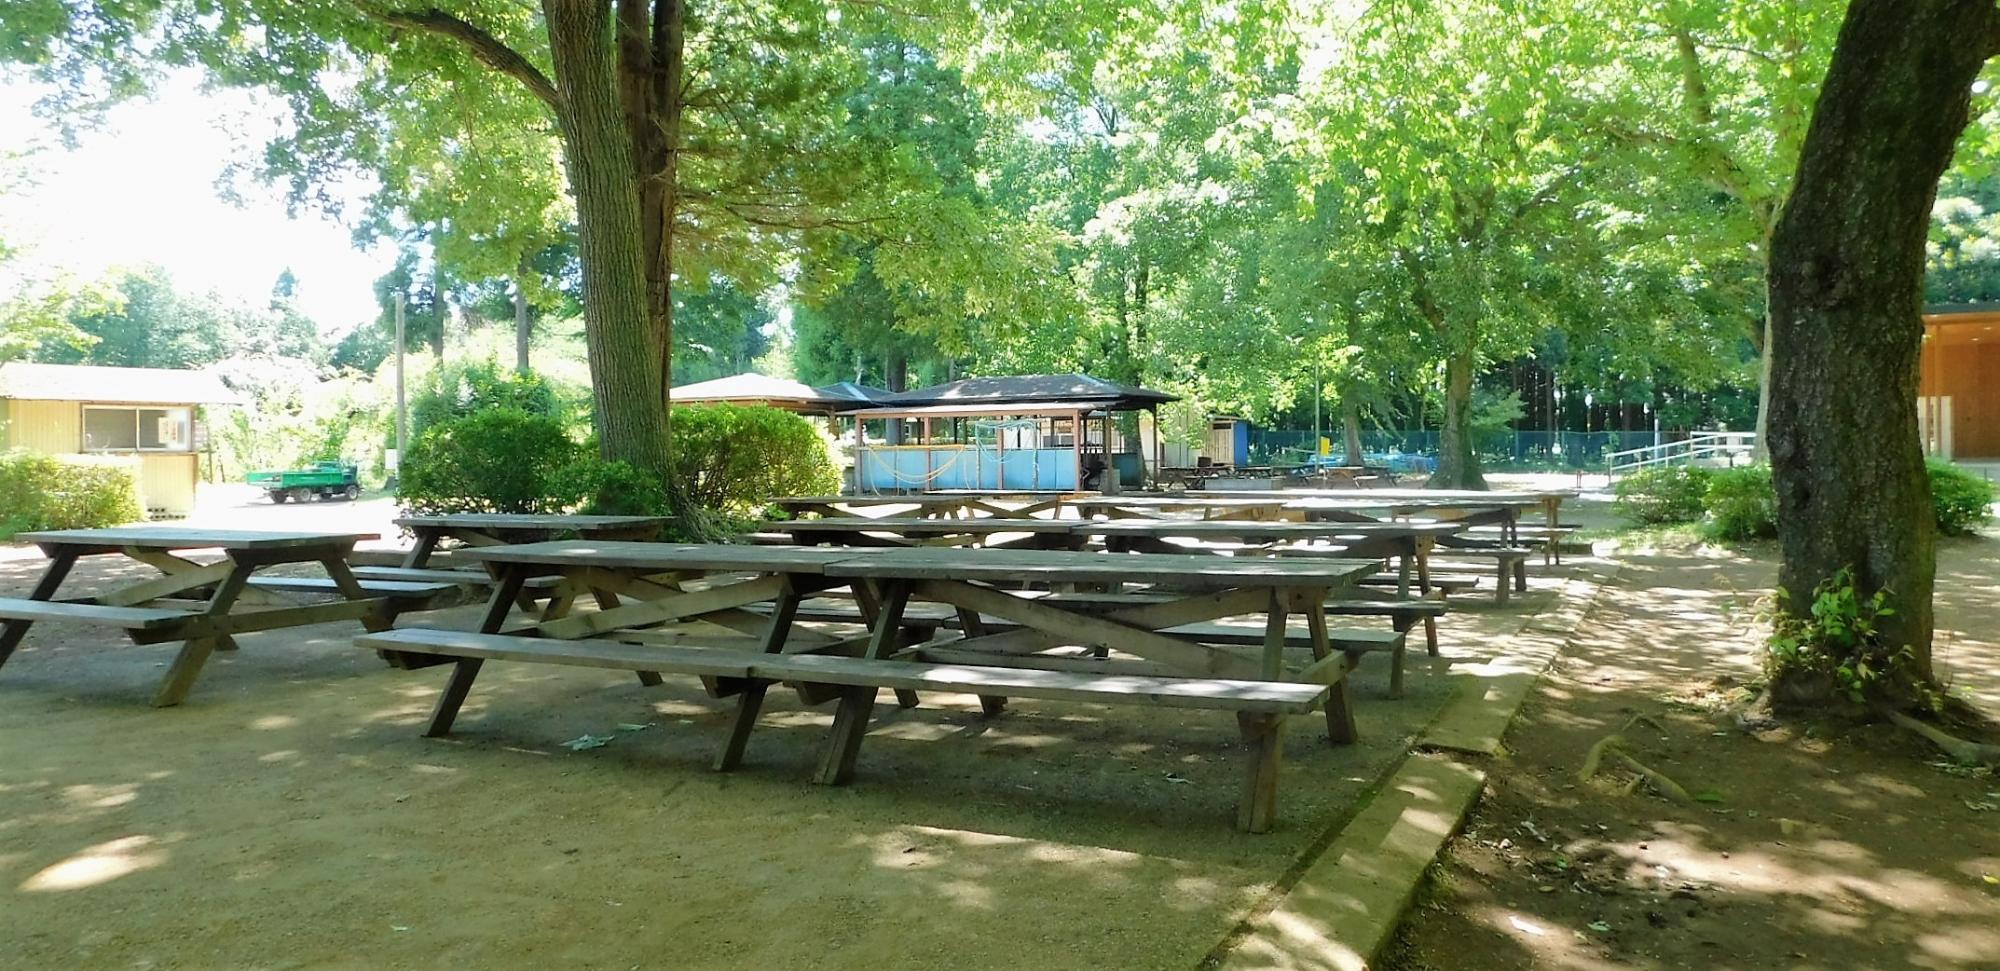 大きな木が植えられ影になっている敷地内に、木製のテーブルと椅子が並んで設置されている写真